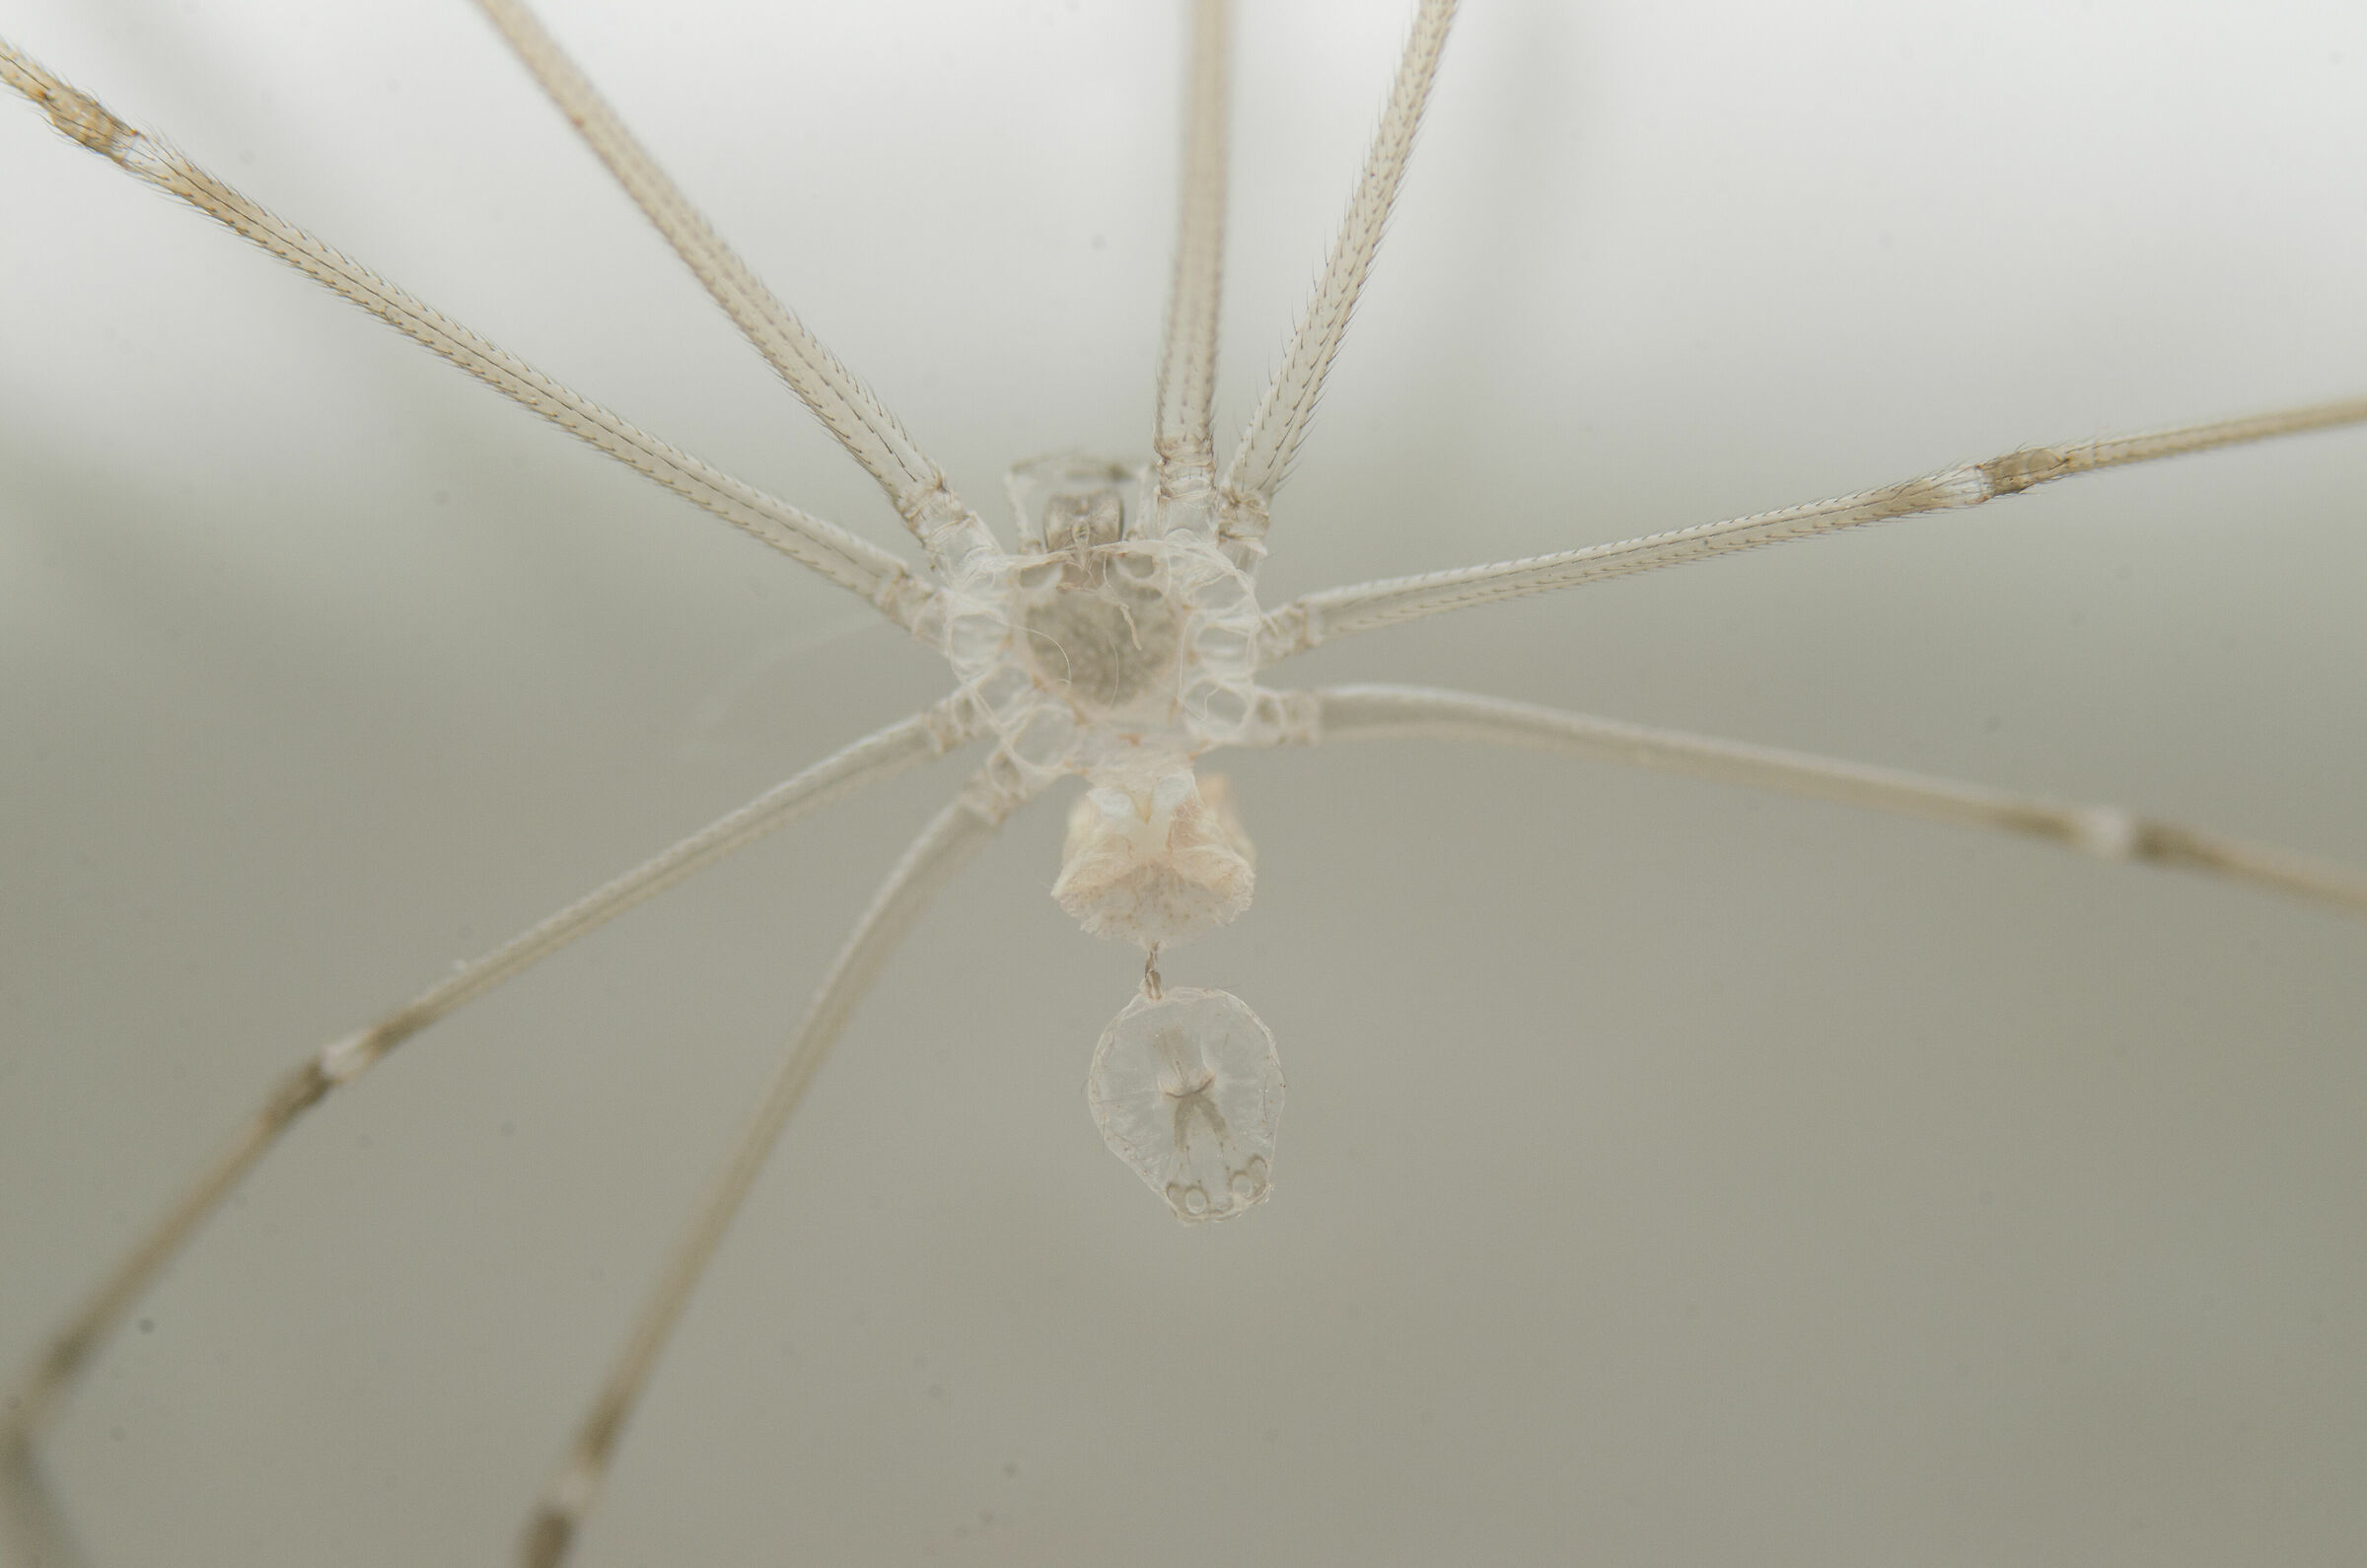 Transparent spider...